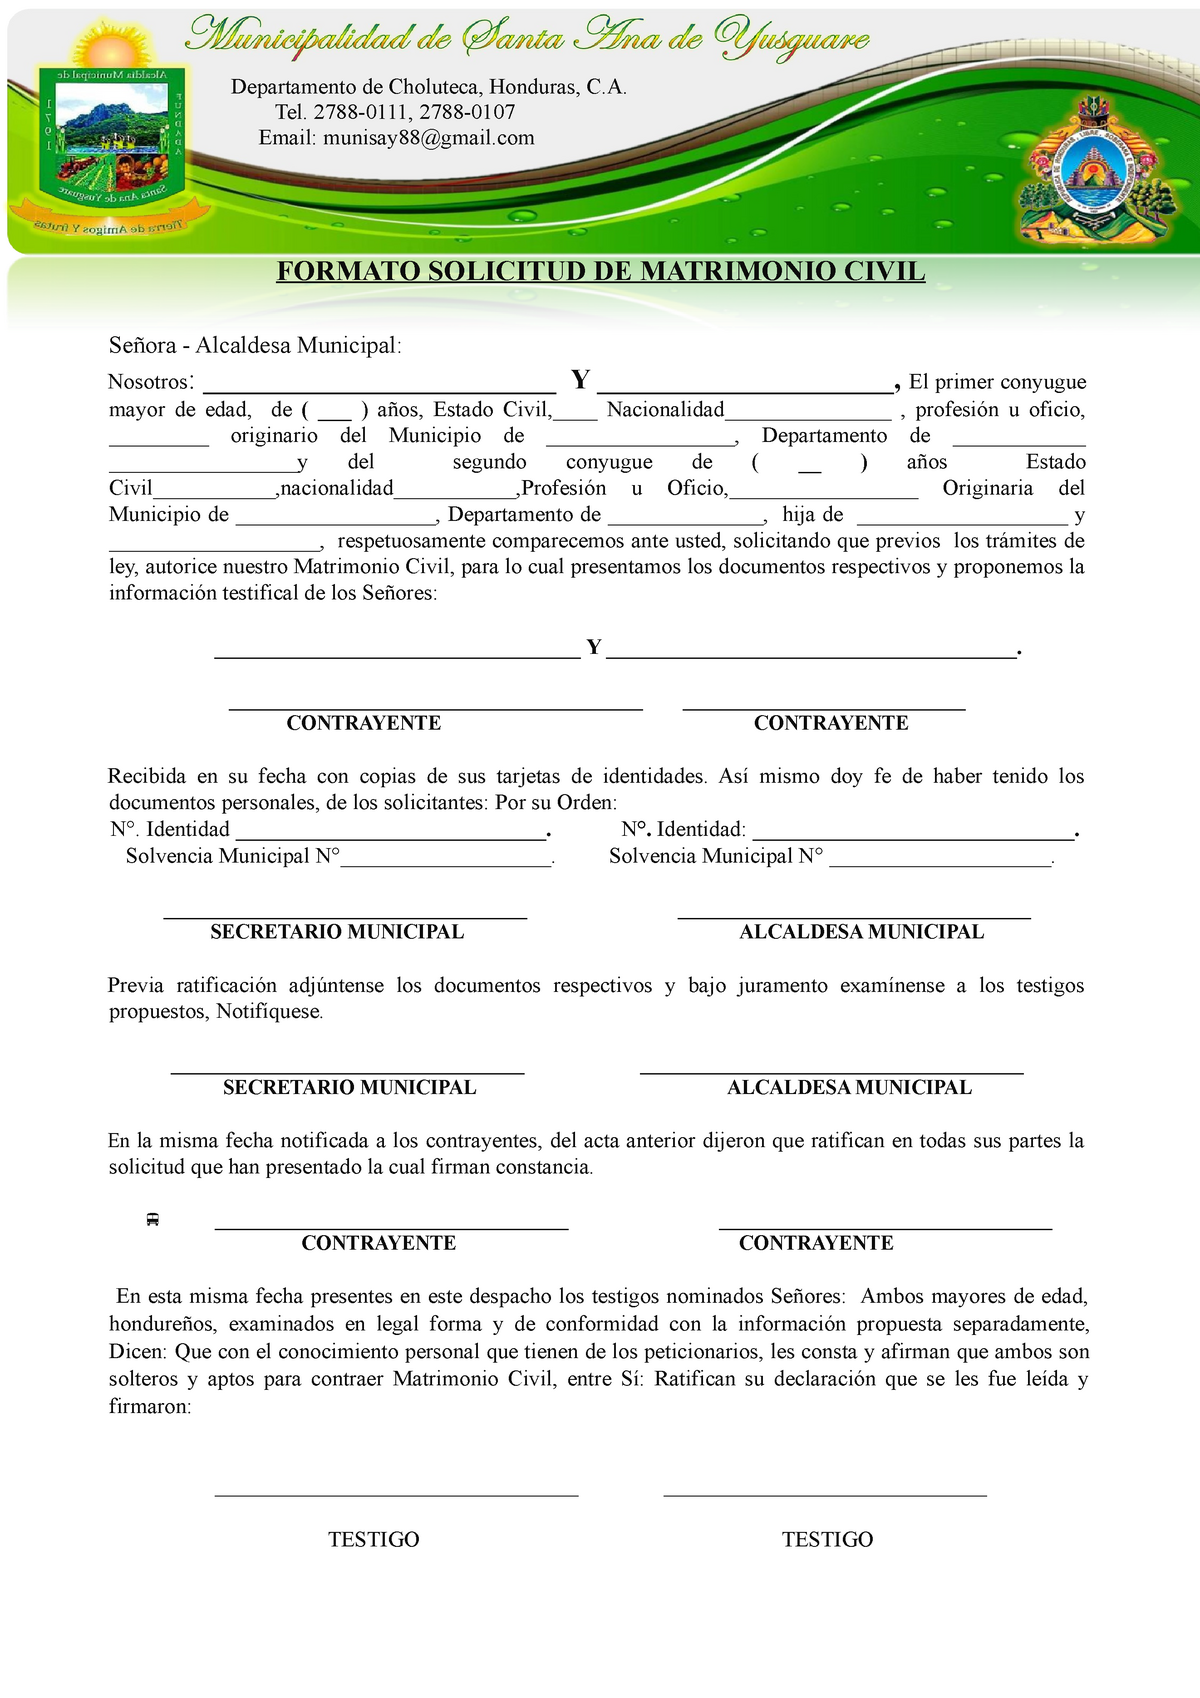 422133223 Formato de acta de Matrimonio Honduras - Departamento de  Choluteca, Honduras, C. Tel. - Studocu